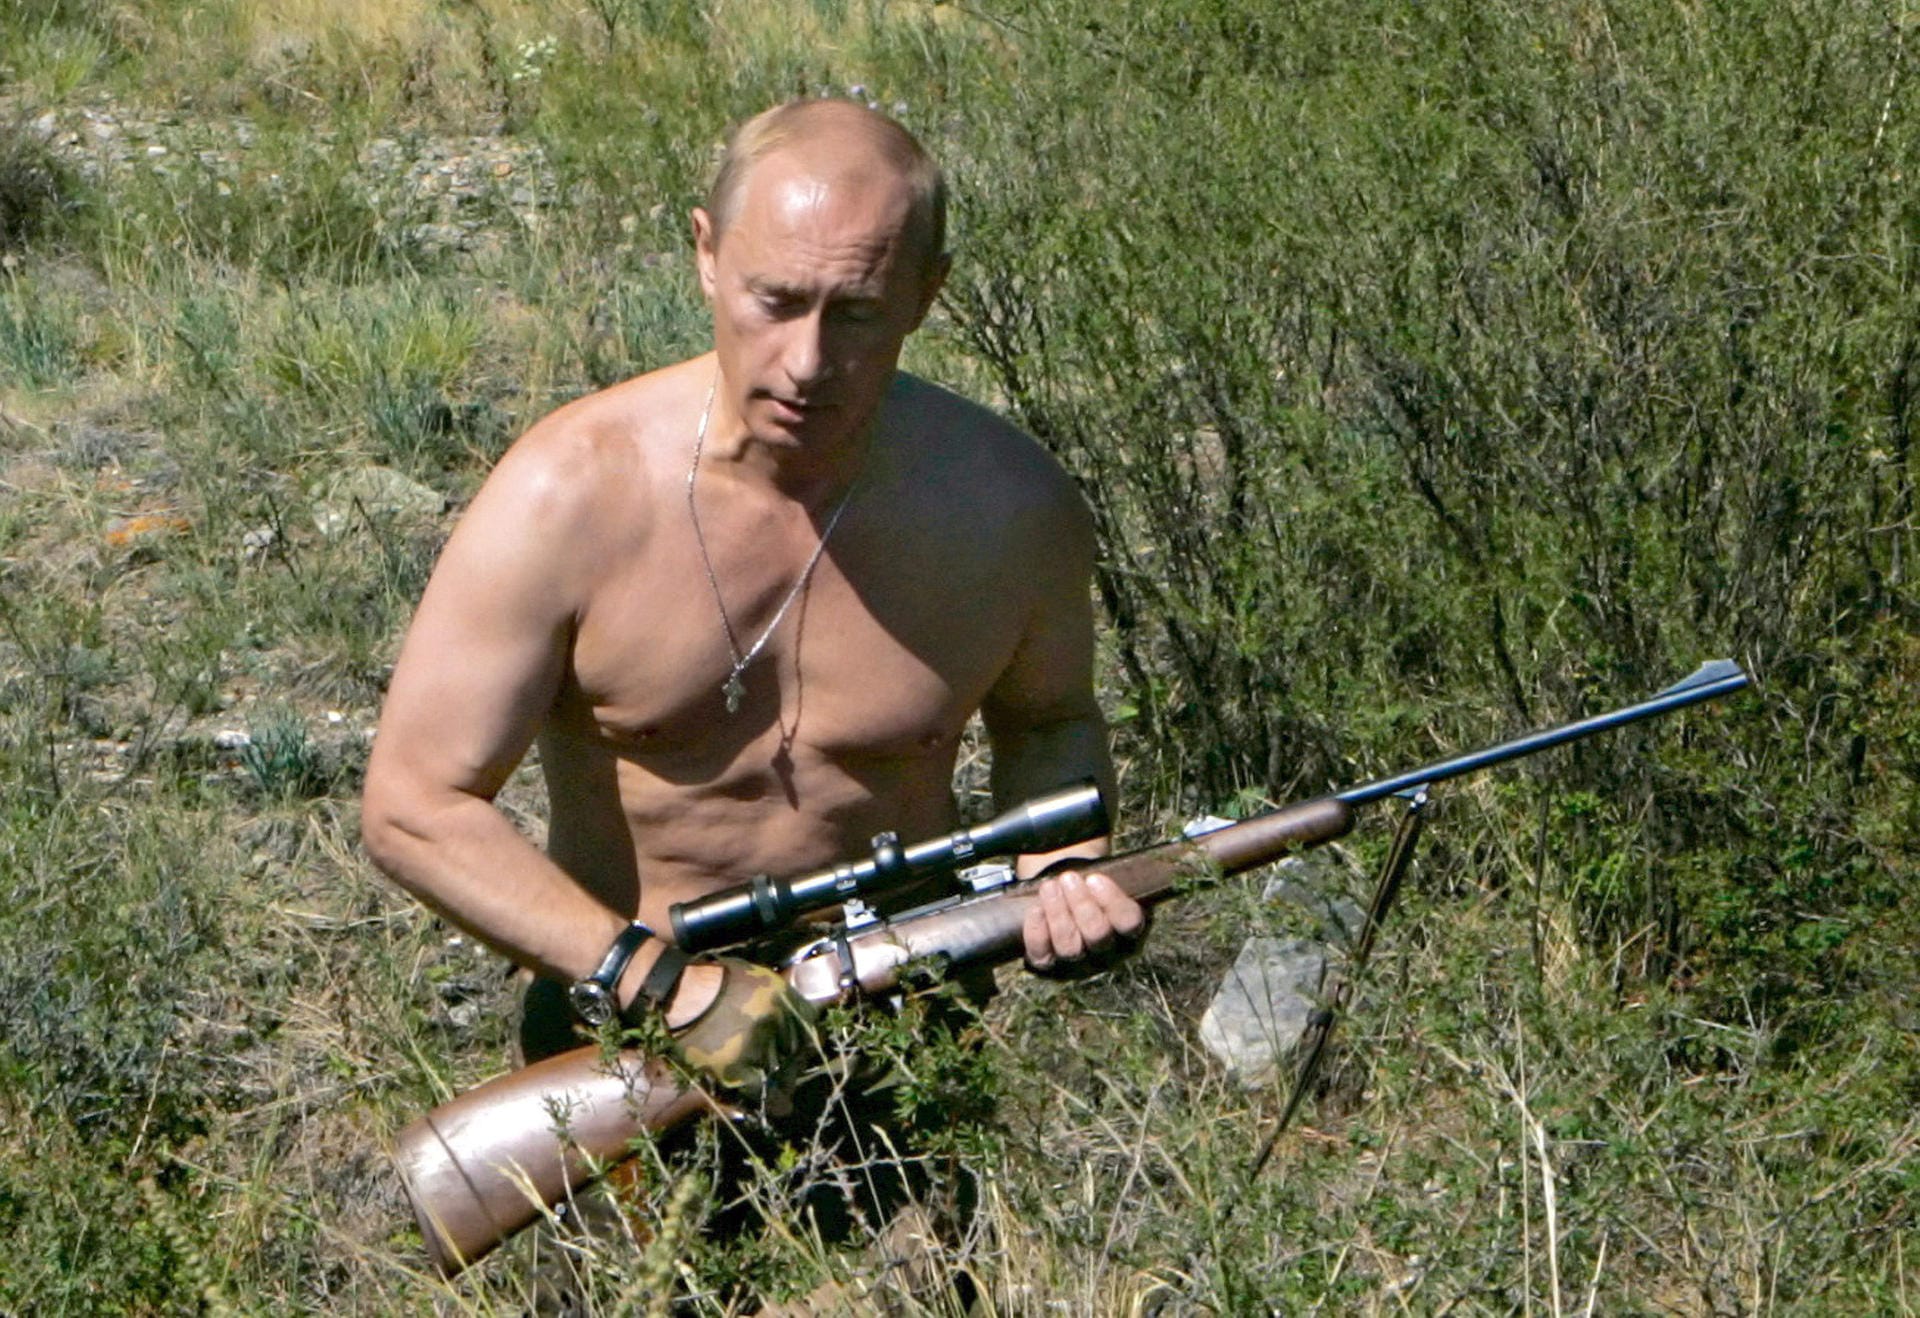 Putin, wie er sich gerne darstellt: beim Jagen, oberkörperfrei, betont männlich.